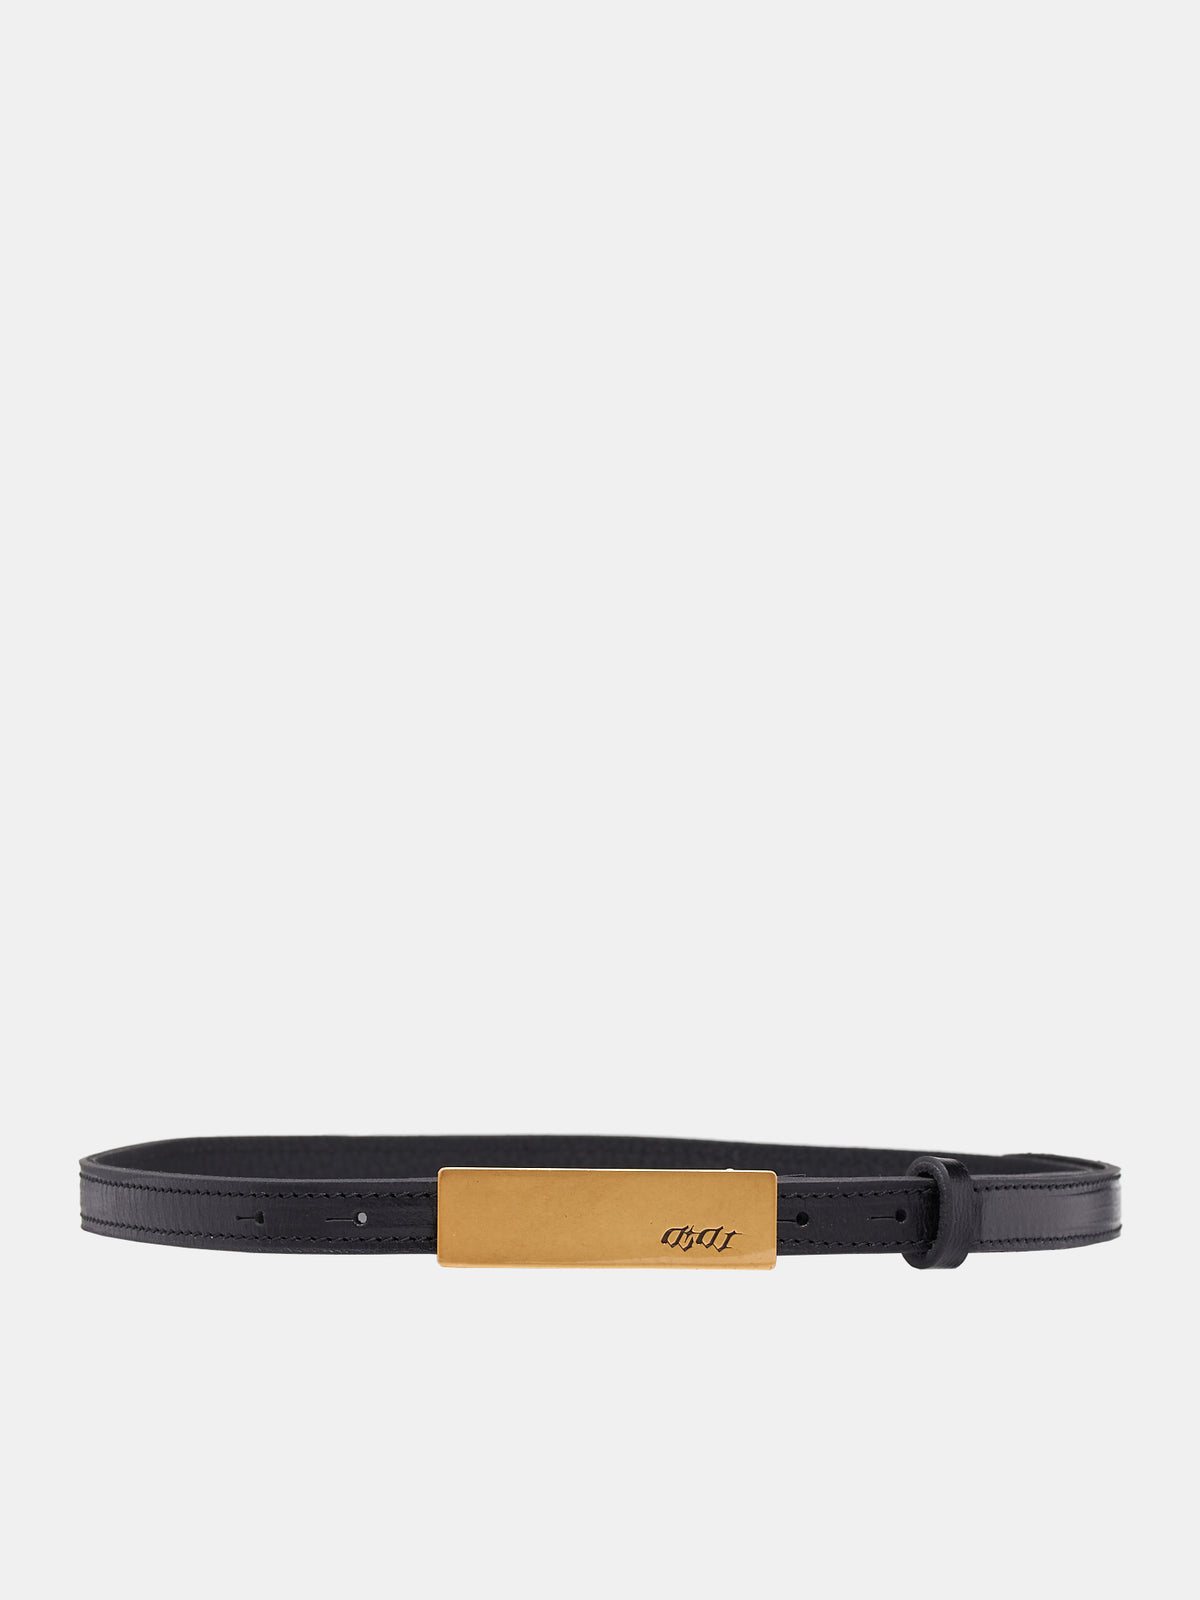 Logo Bar Belt (ACC02GD-GOLDEN)